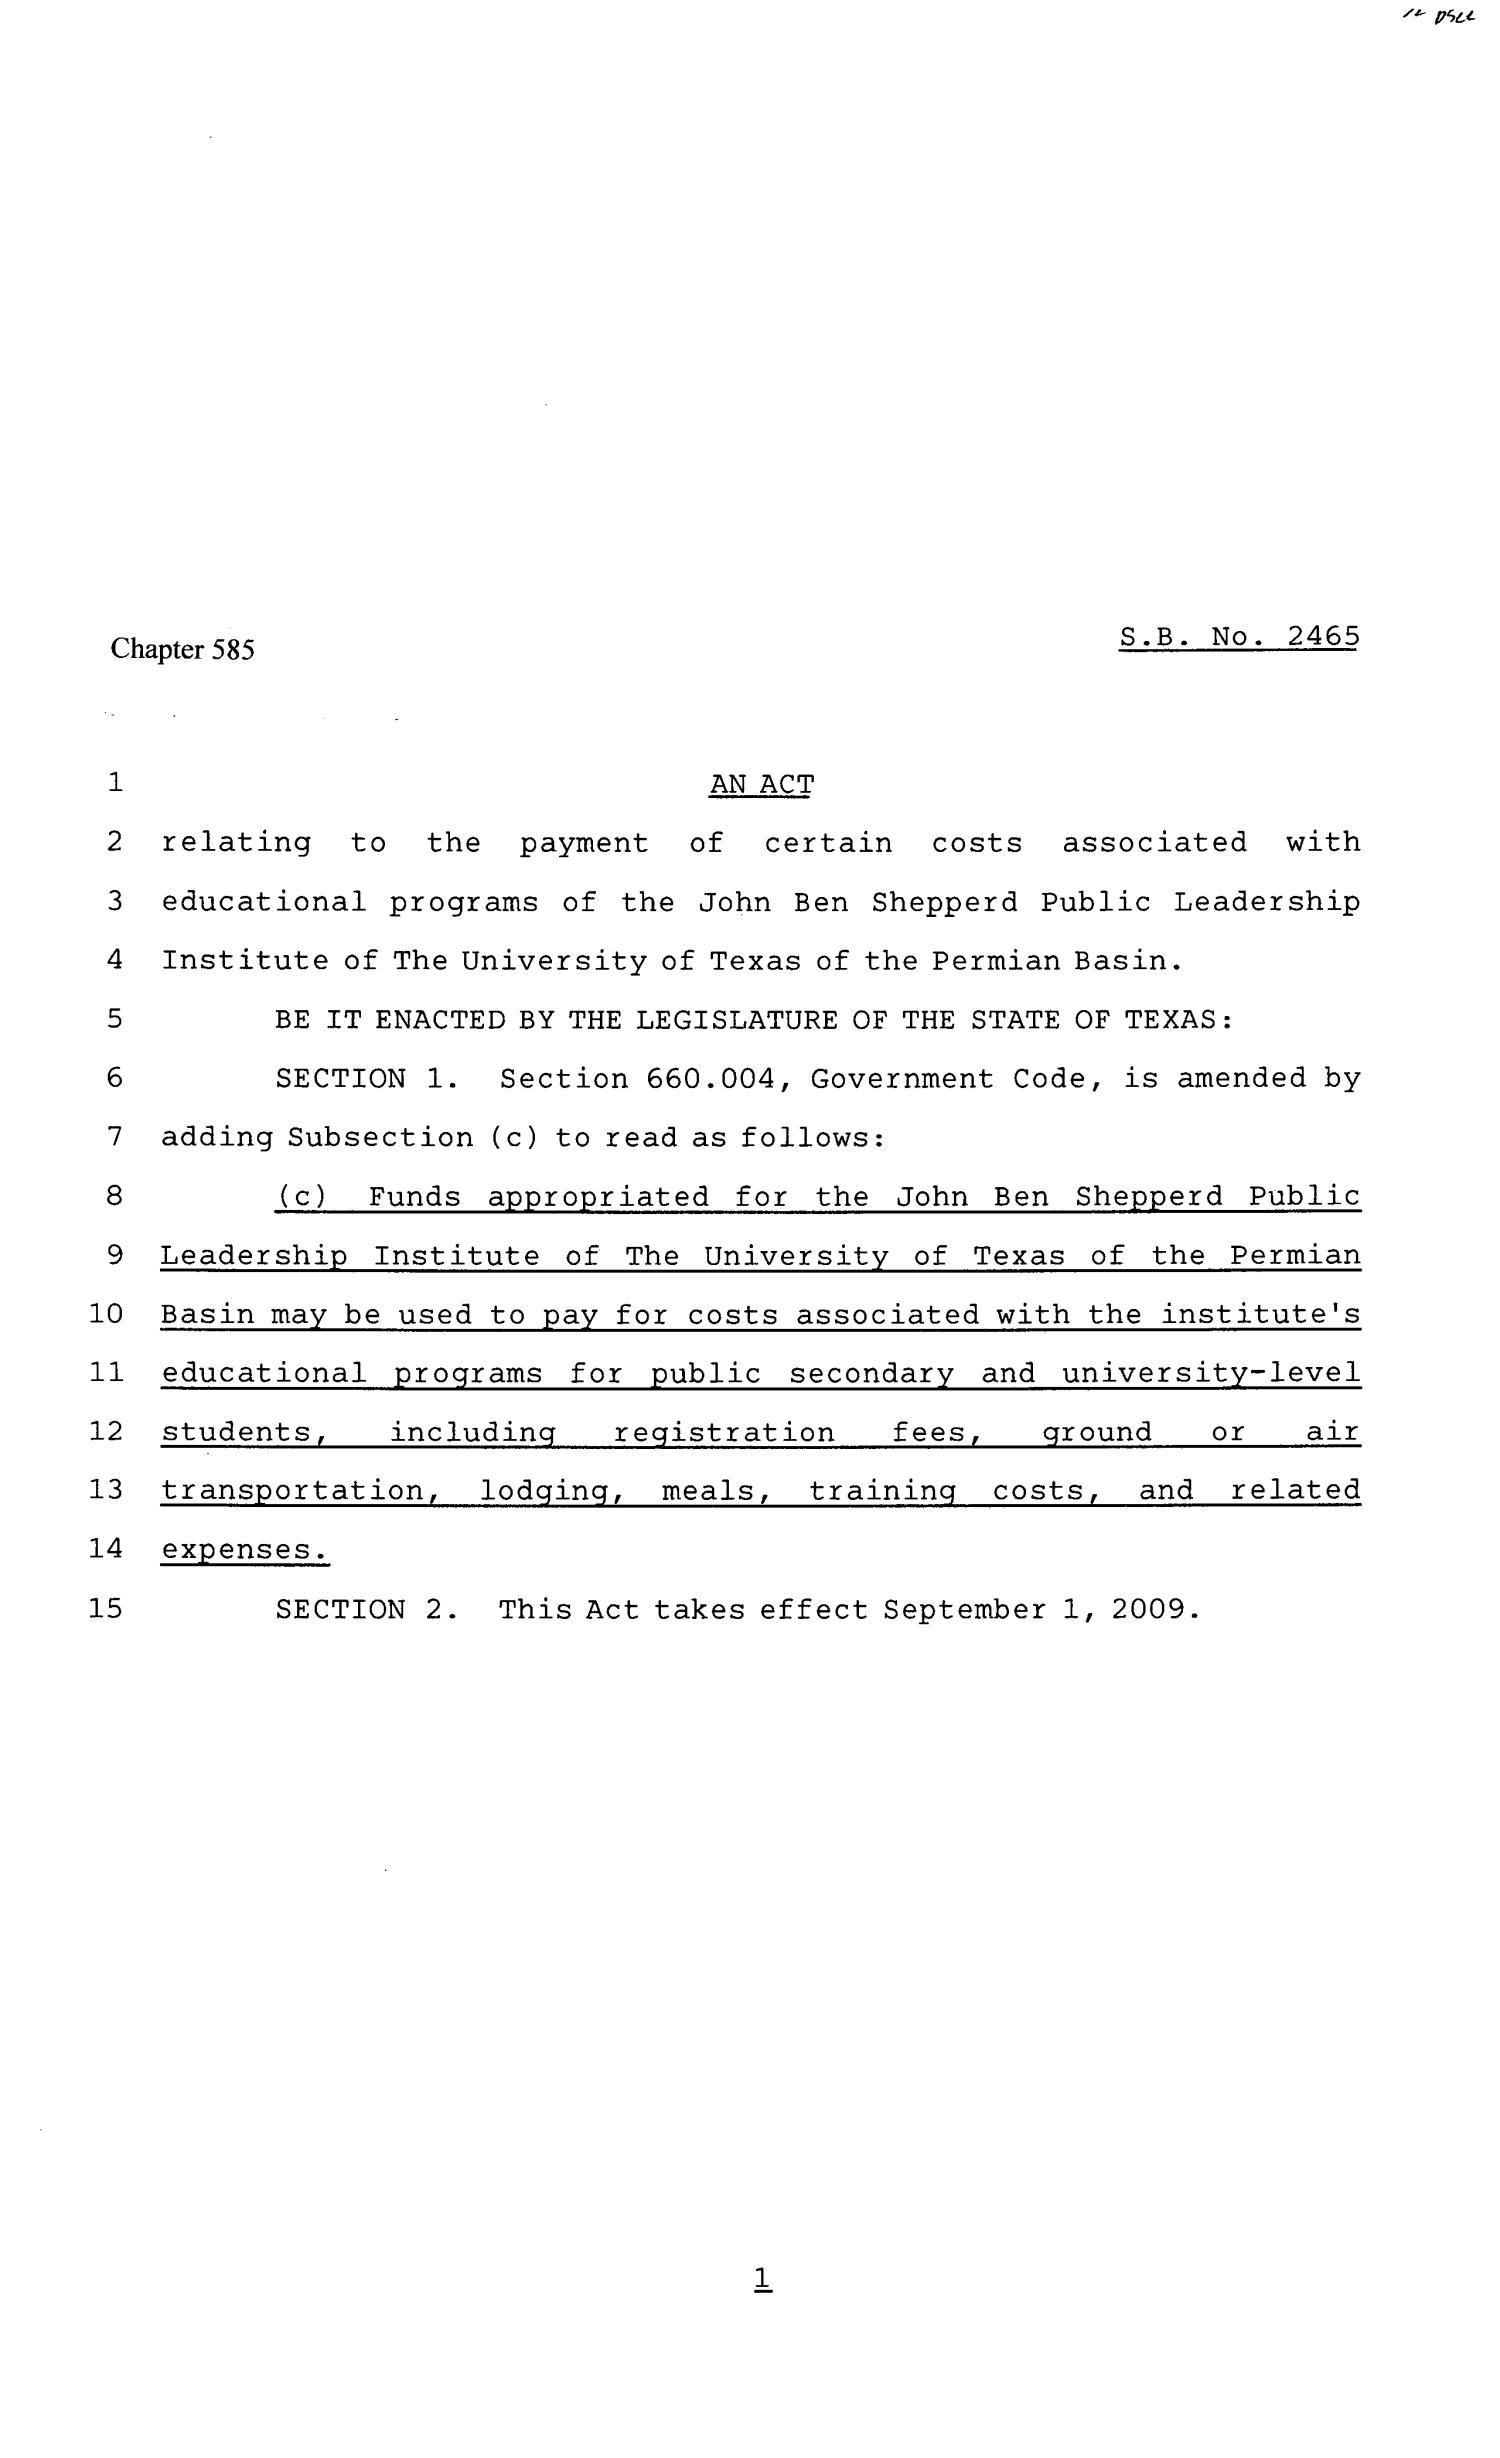 81st Texas Legislature, Senate Bill 2465, Chapter 585
                                                
                                                    [Sequence #]: 1 of 2
                                                